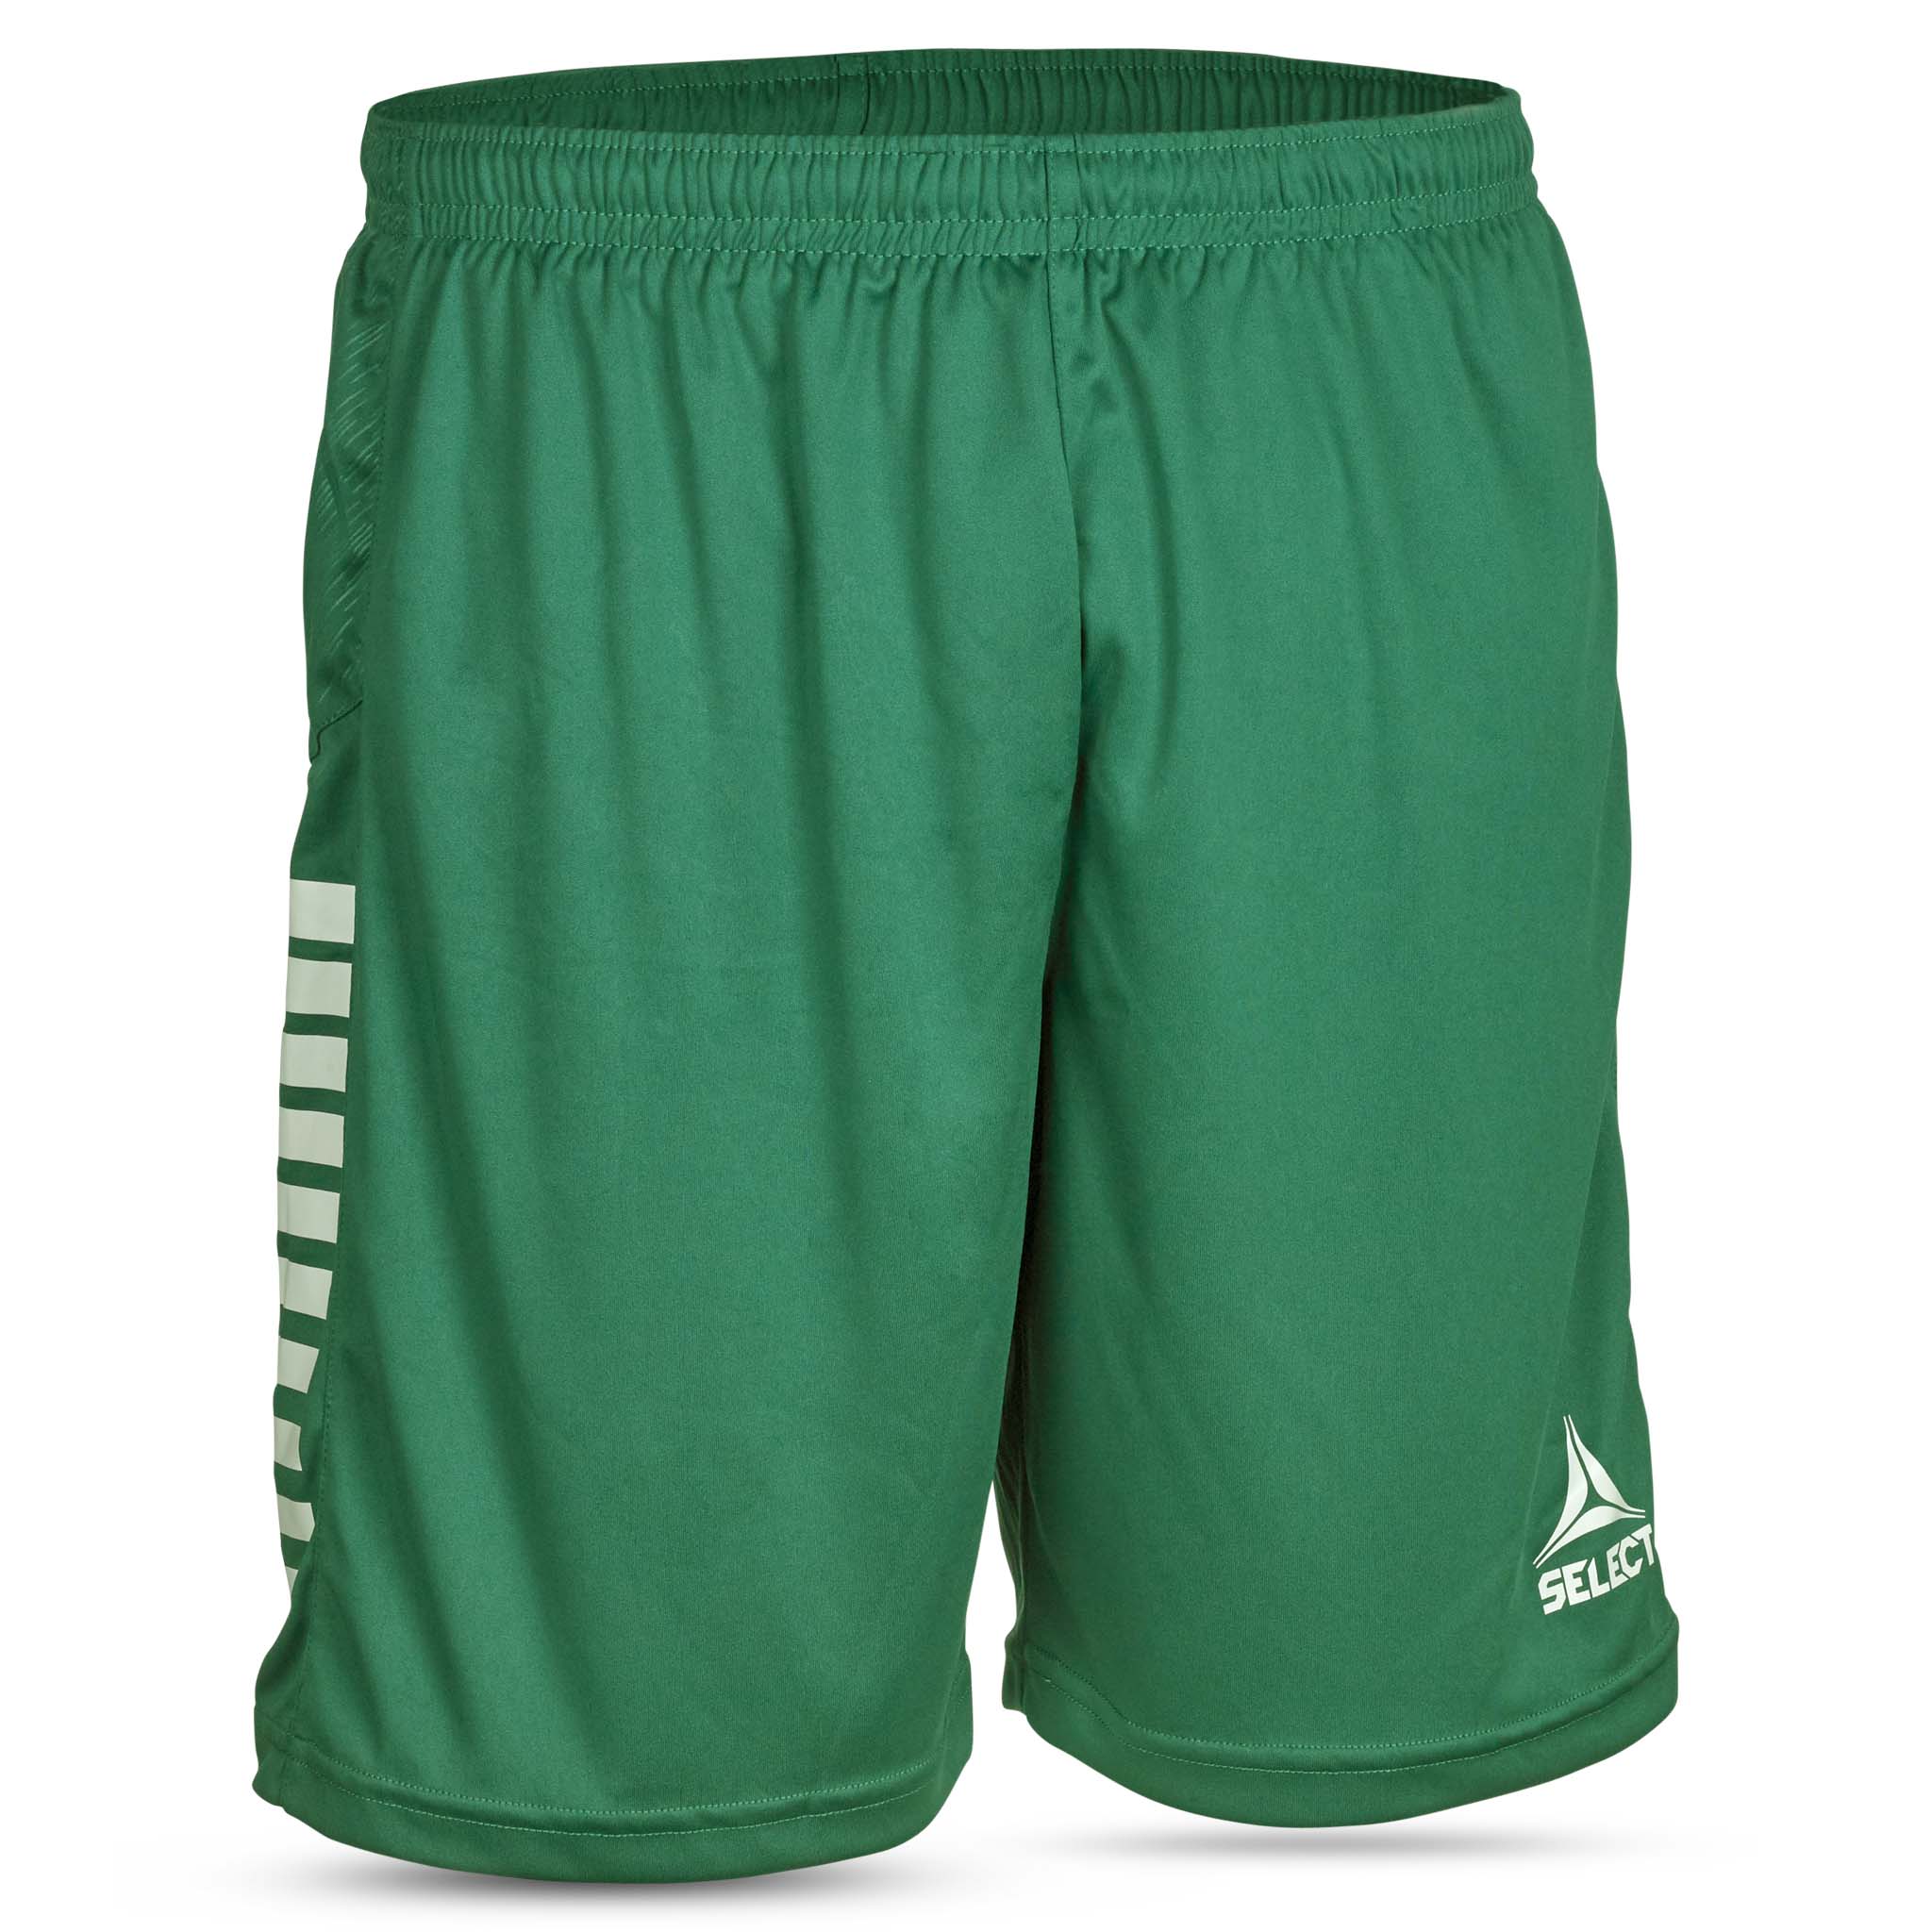 Spain Shorts #färg_grön